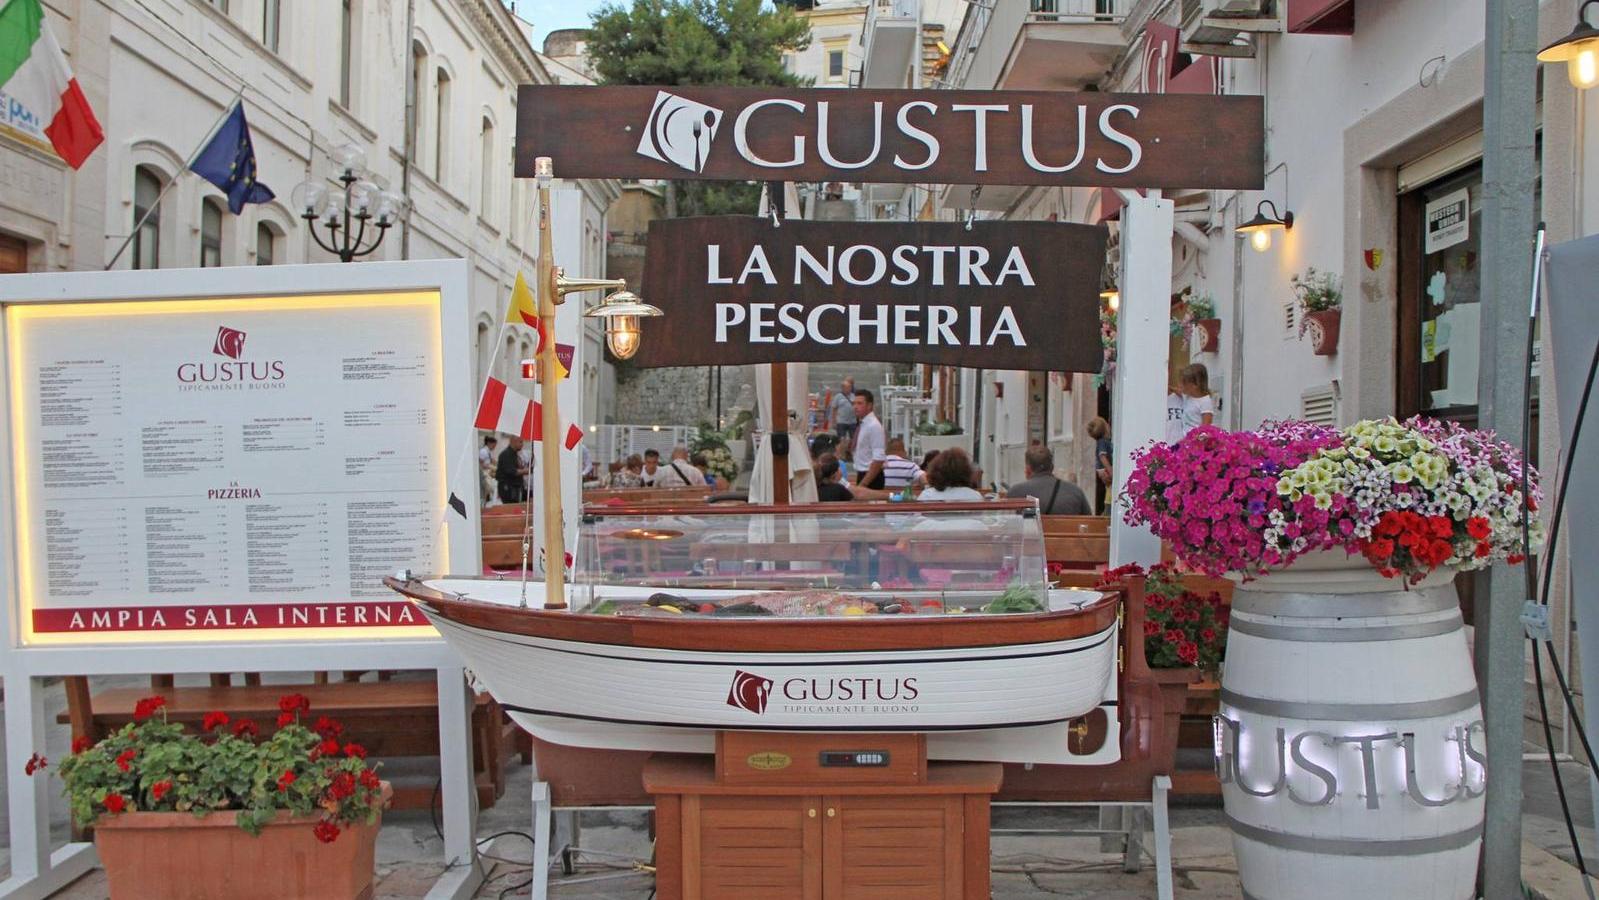 Miglior ristorante a Vieste - Gustus | Localtourism.it